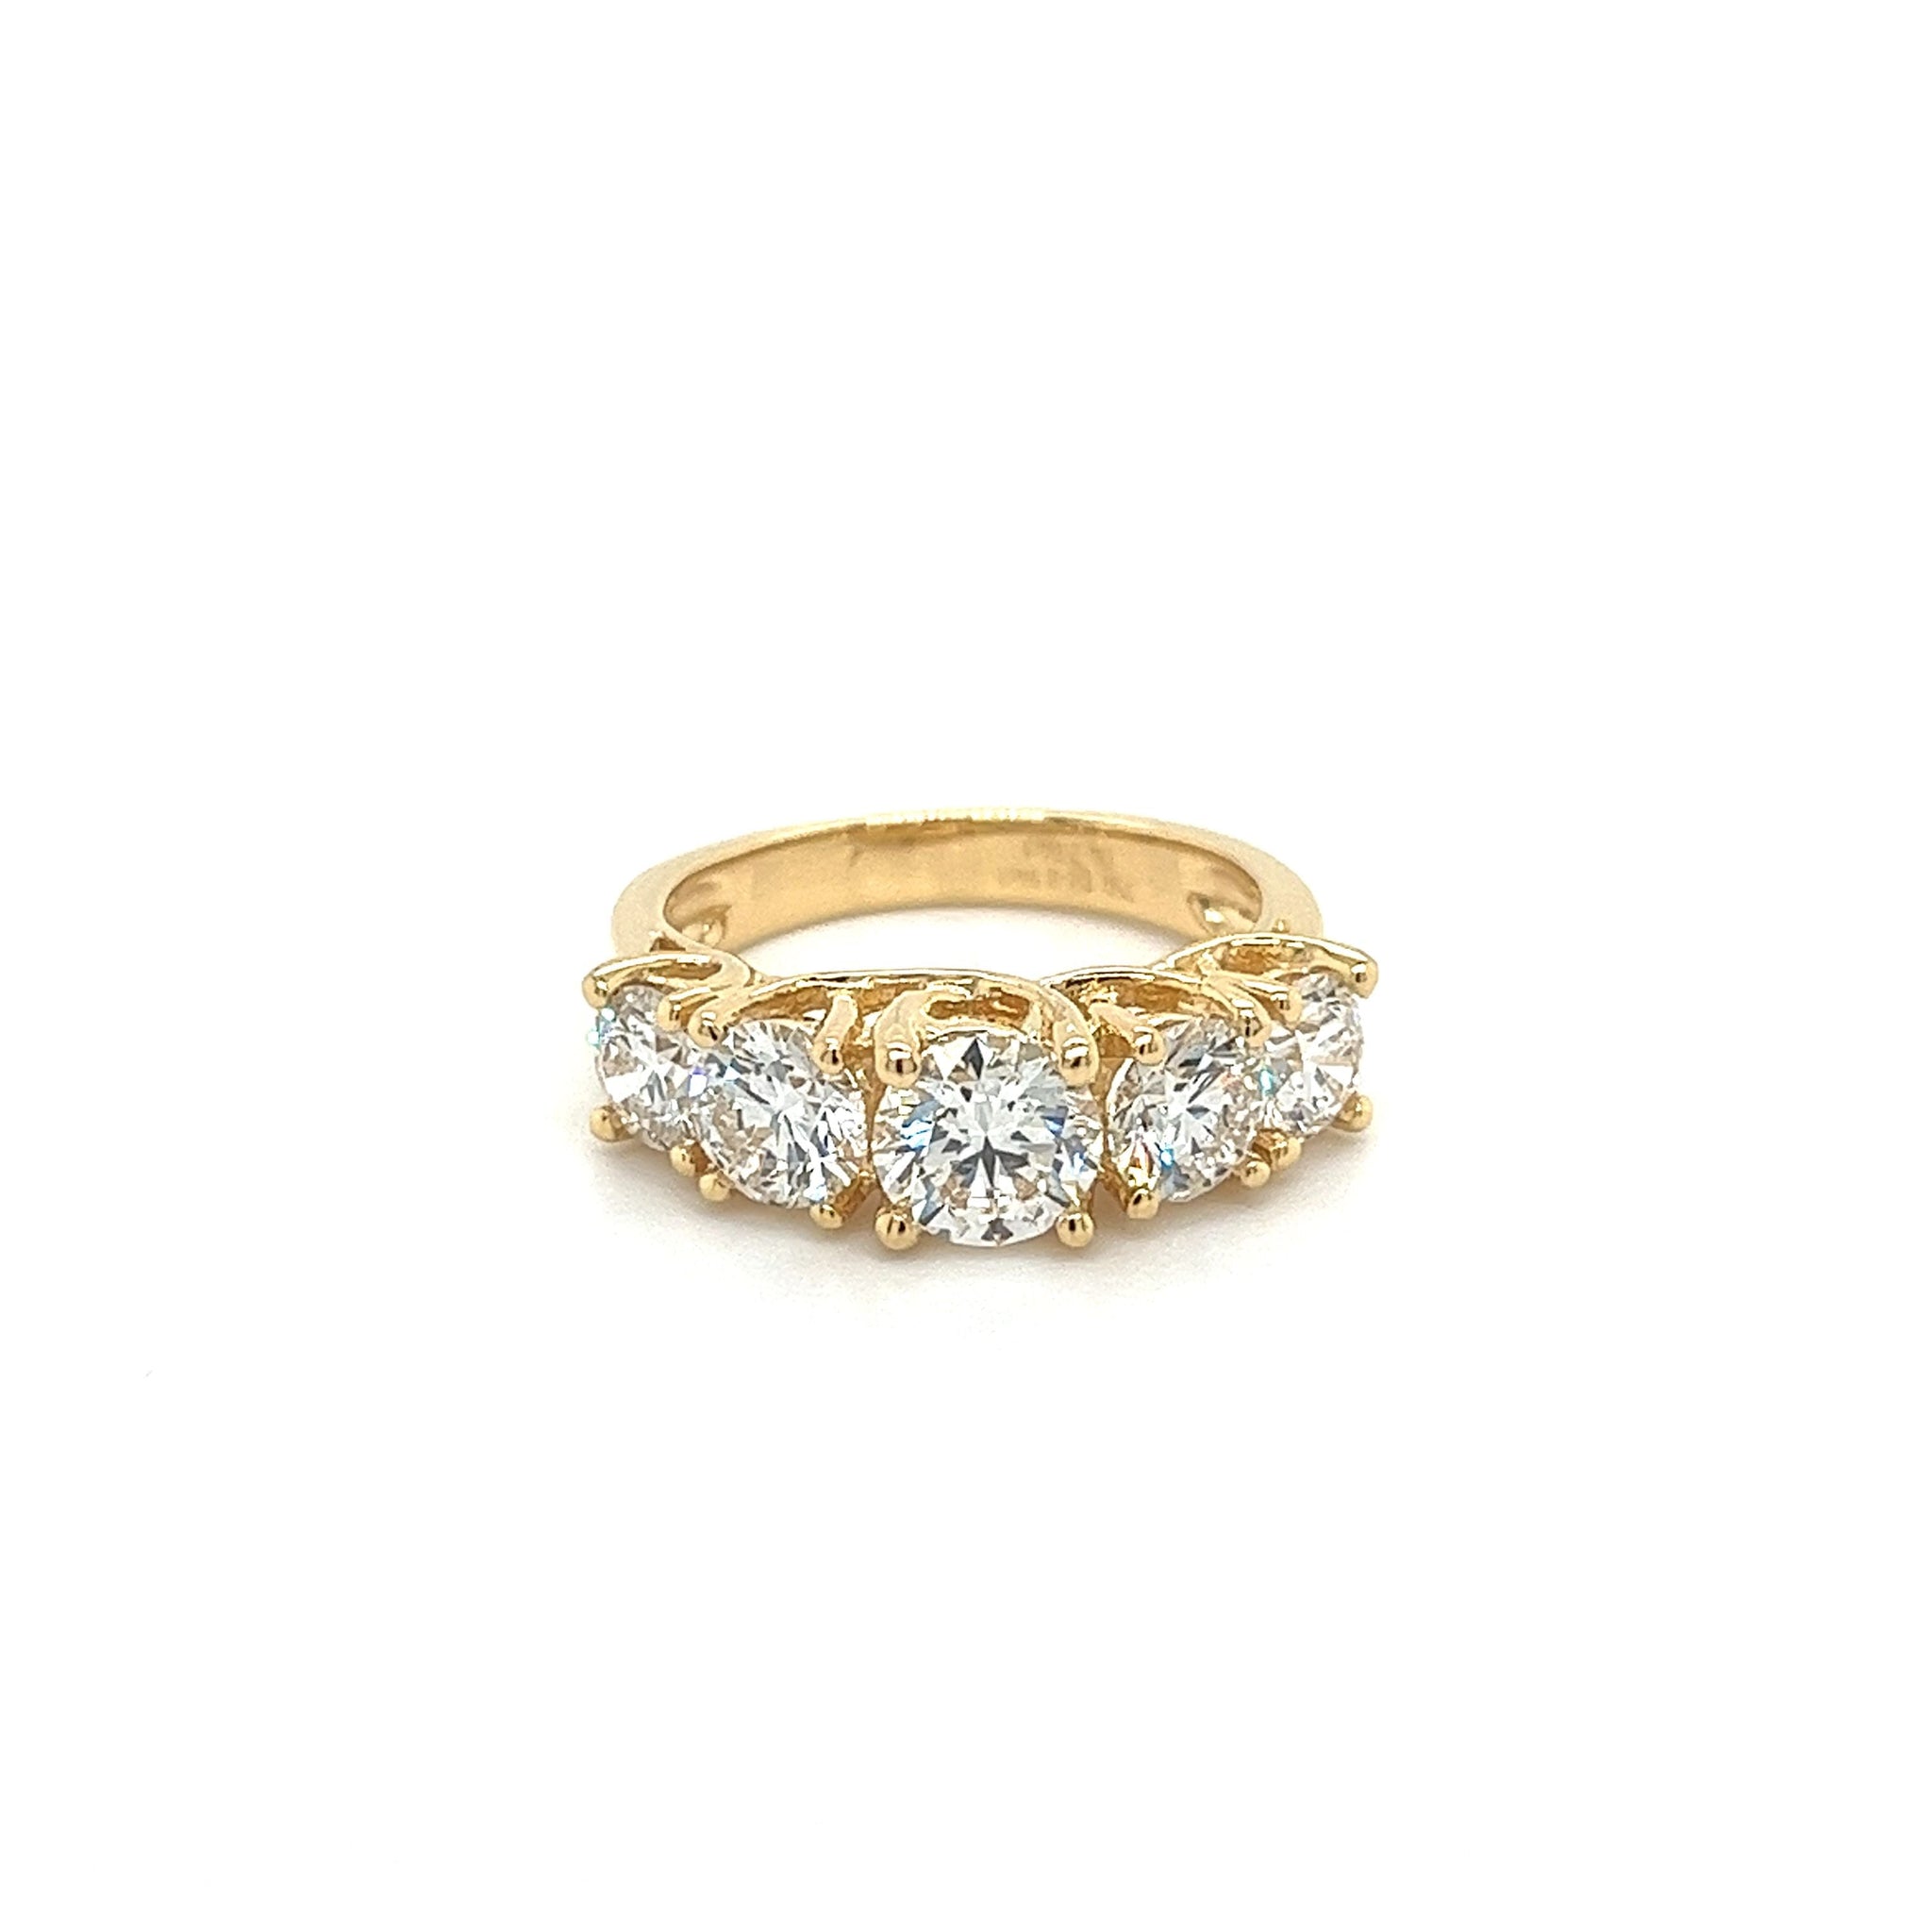 10ct. Multi Stone Band Ring | Simulated diamond rings, Diamond, Multi stone